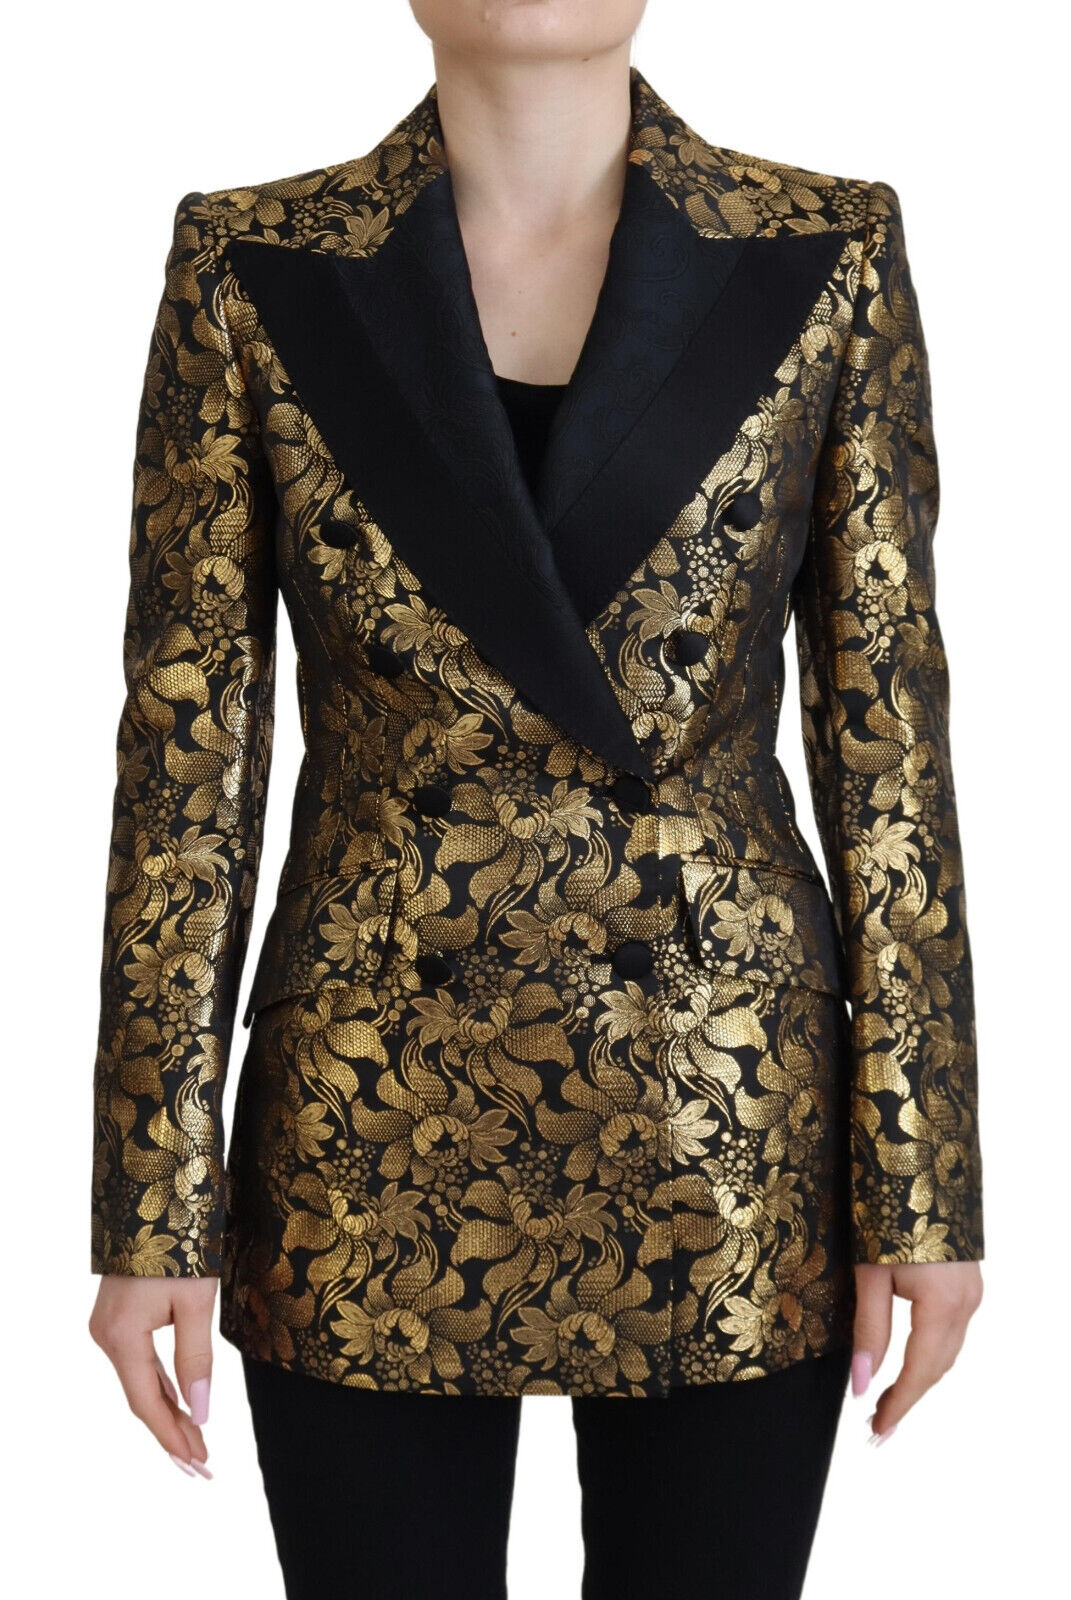 DOLCE & GABBANA Dolce & Gabbana   Jacquard Coat Blazer Women's Jacket